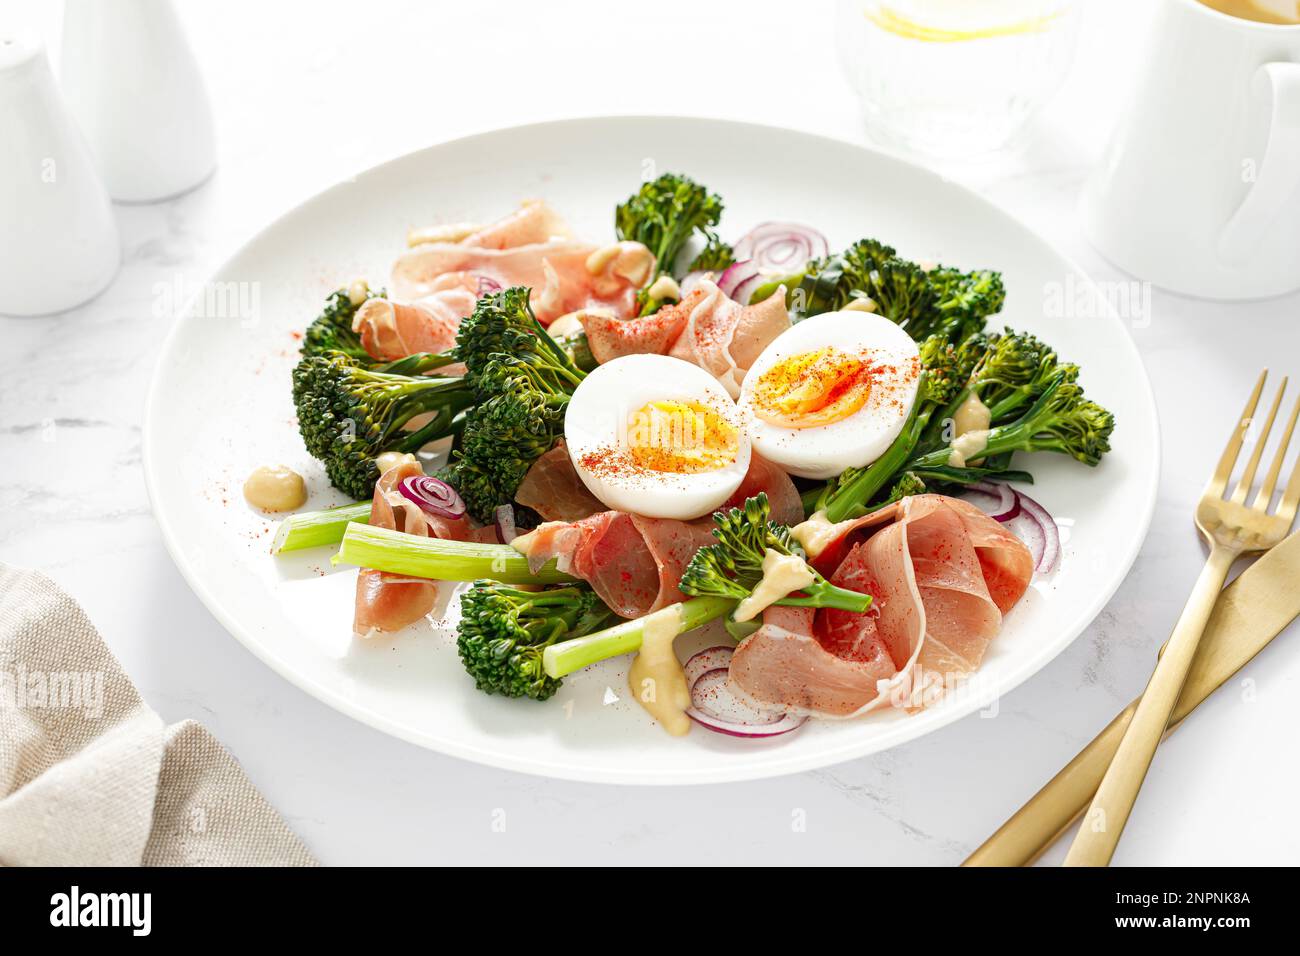 Salade d'oeufs de Pâques avec prosciutto et broccolini sur fond blanc. Salade de Pâques avec œuf dur Banque D'Images